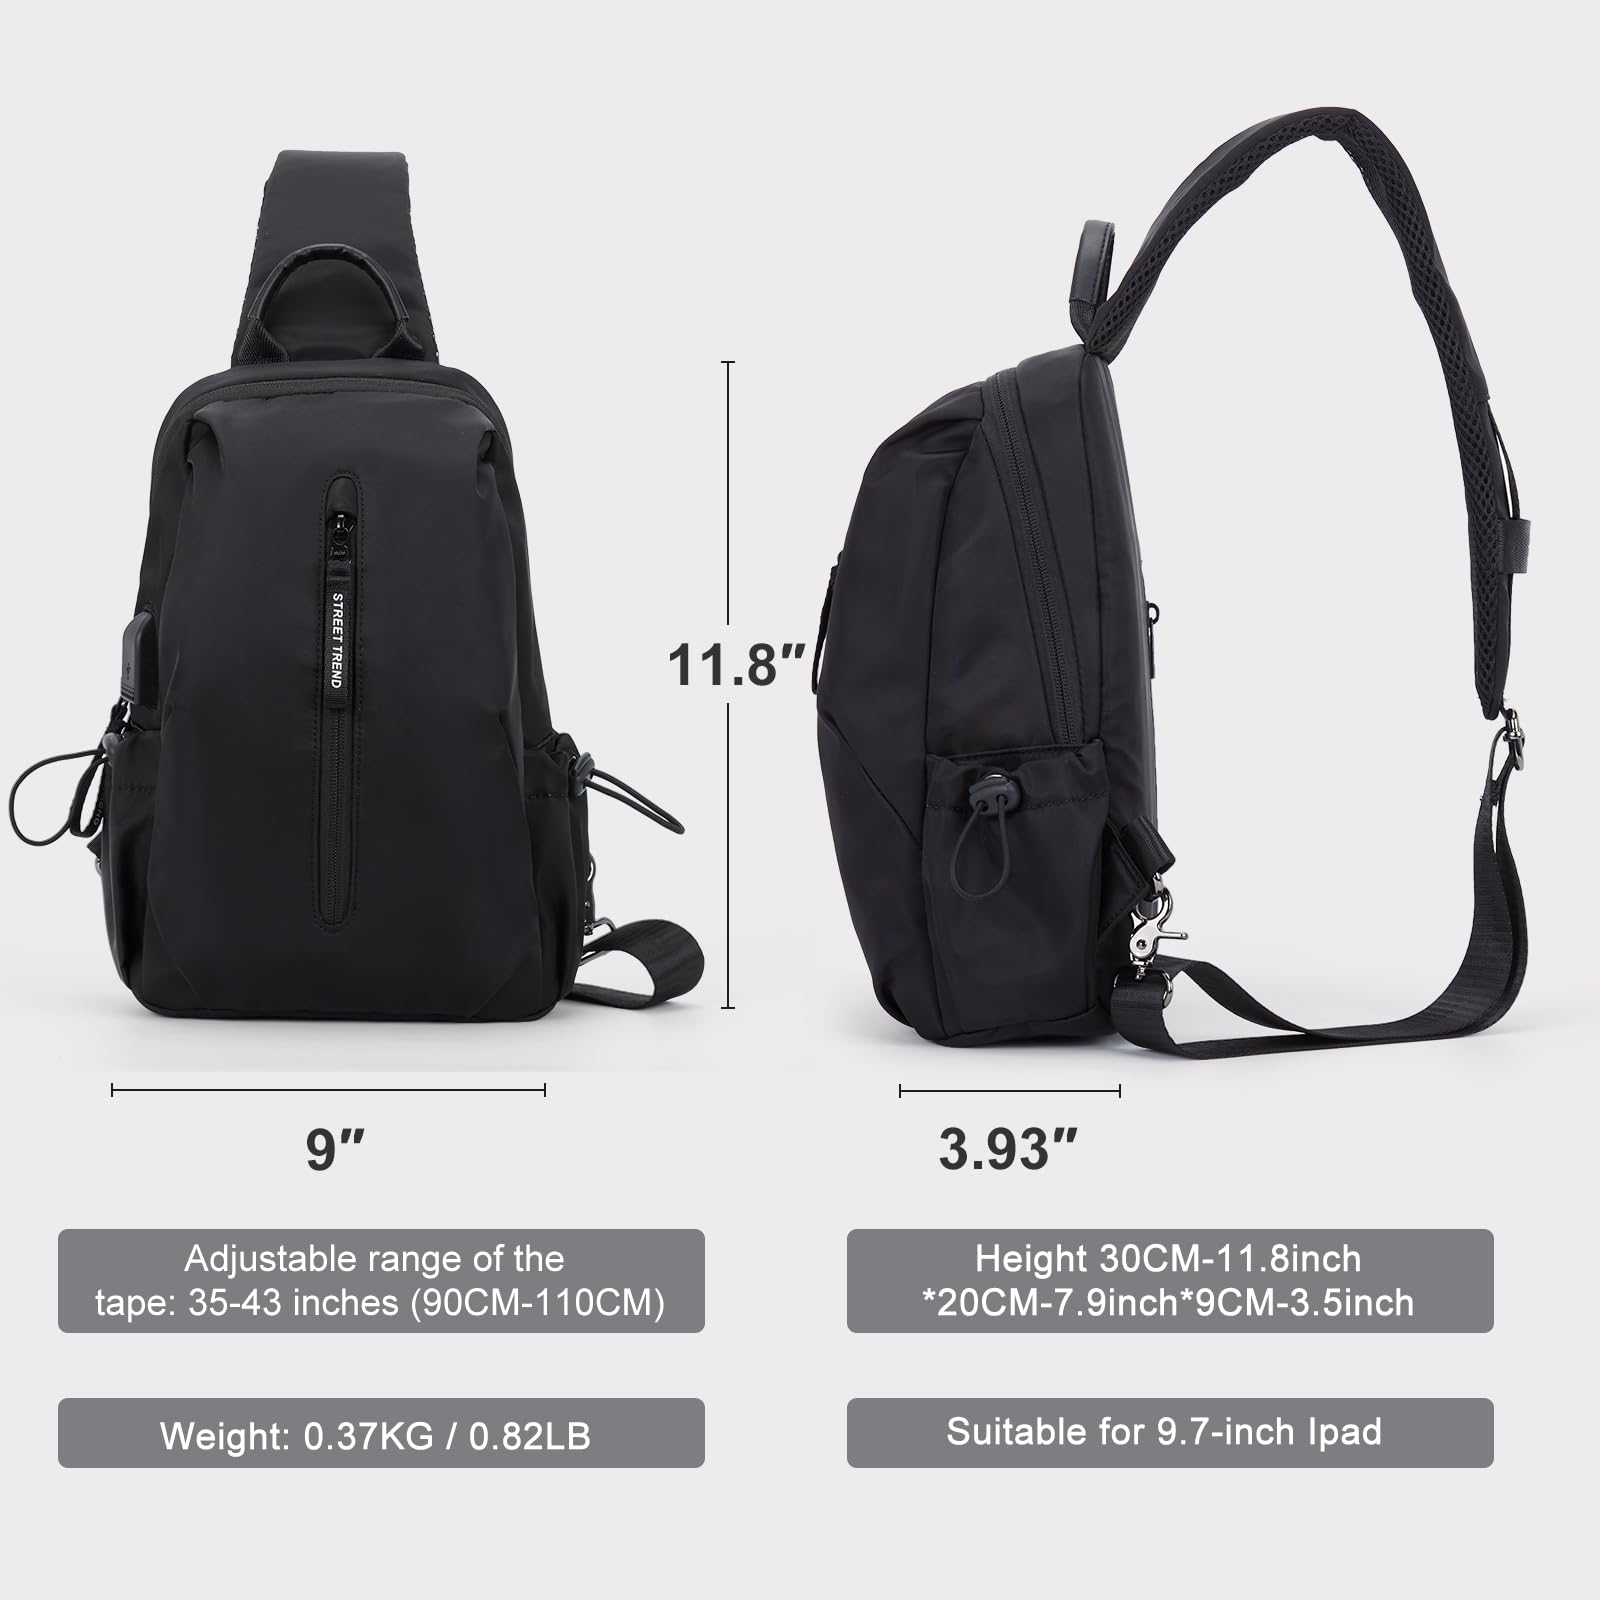 WEPLAN Sling Bag for Men,Crossbody Bag for Women,Chest Bag Daypack for Travel Sport Hiking Sling Backpack